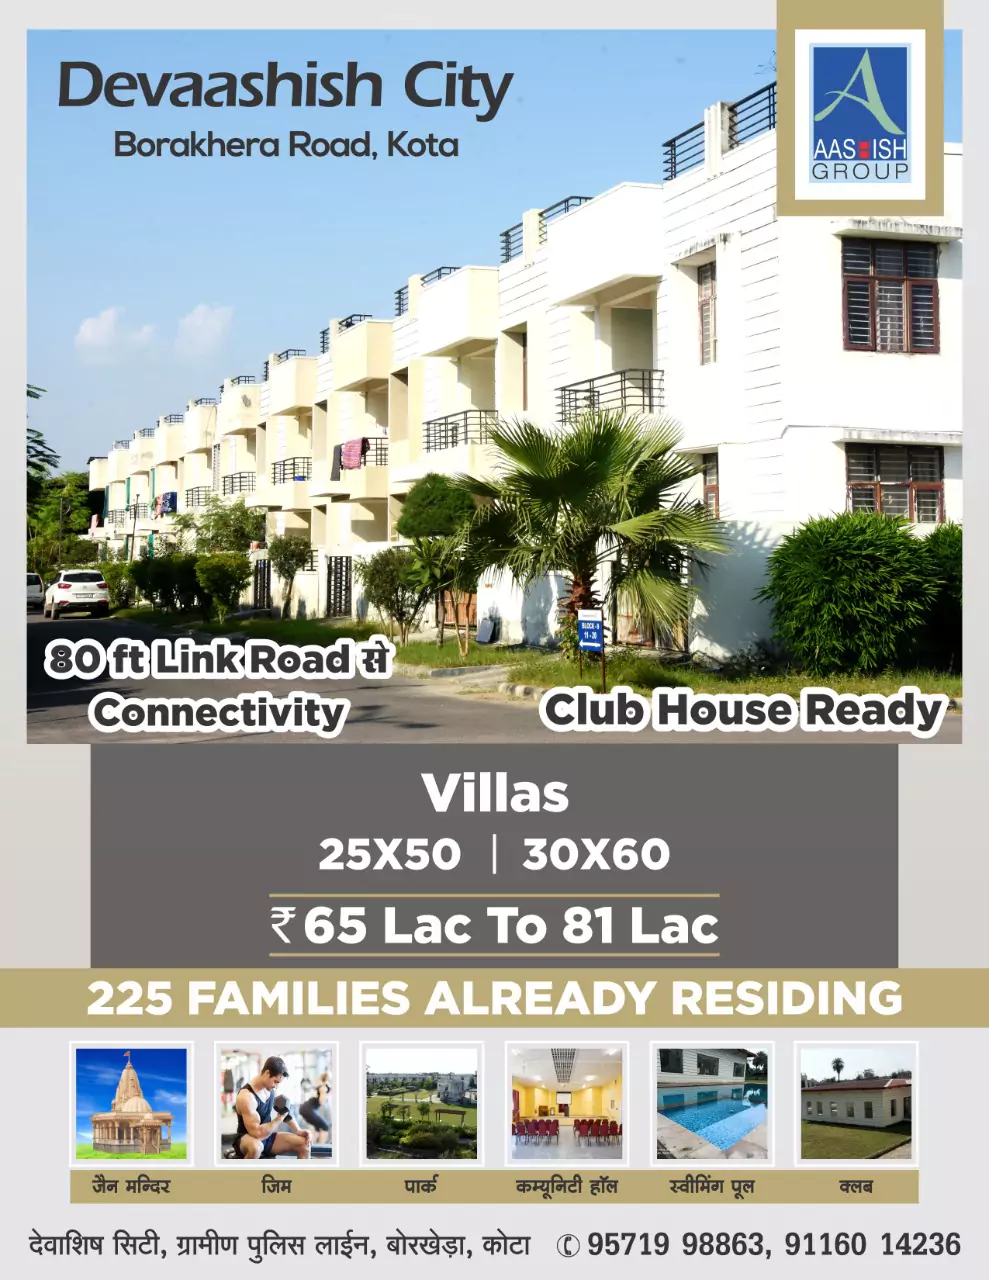 2 BHK Villa In Devaashish city